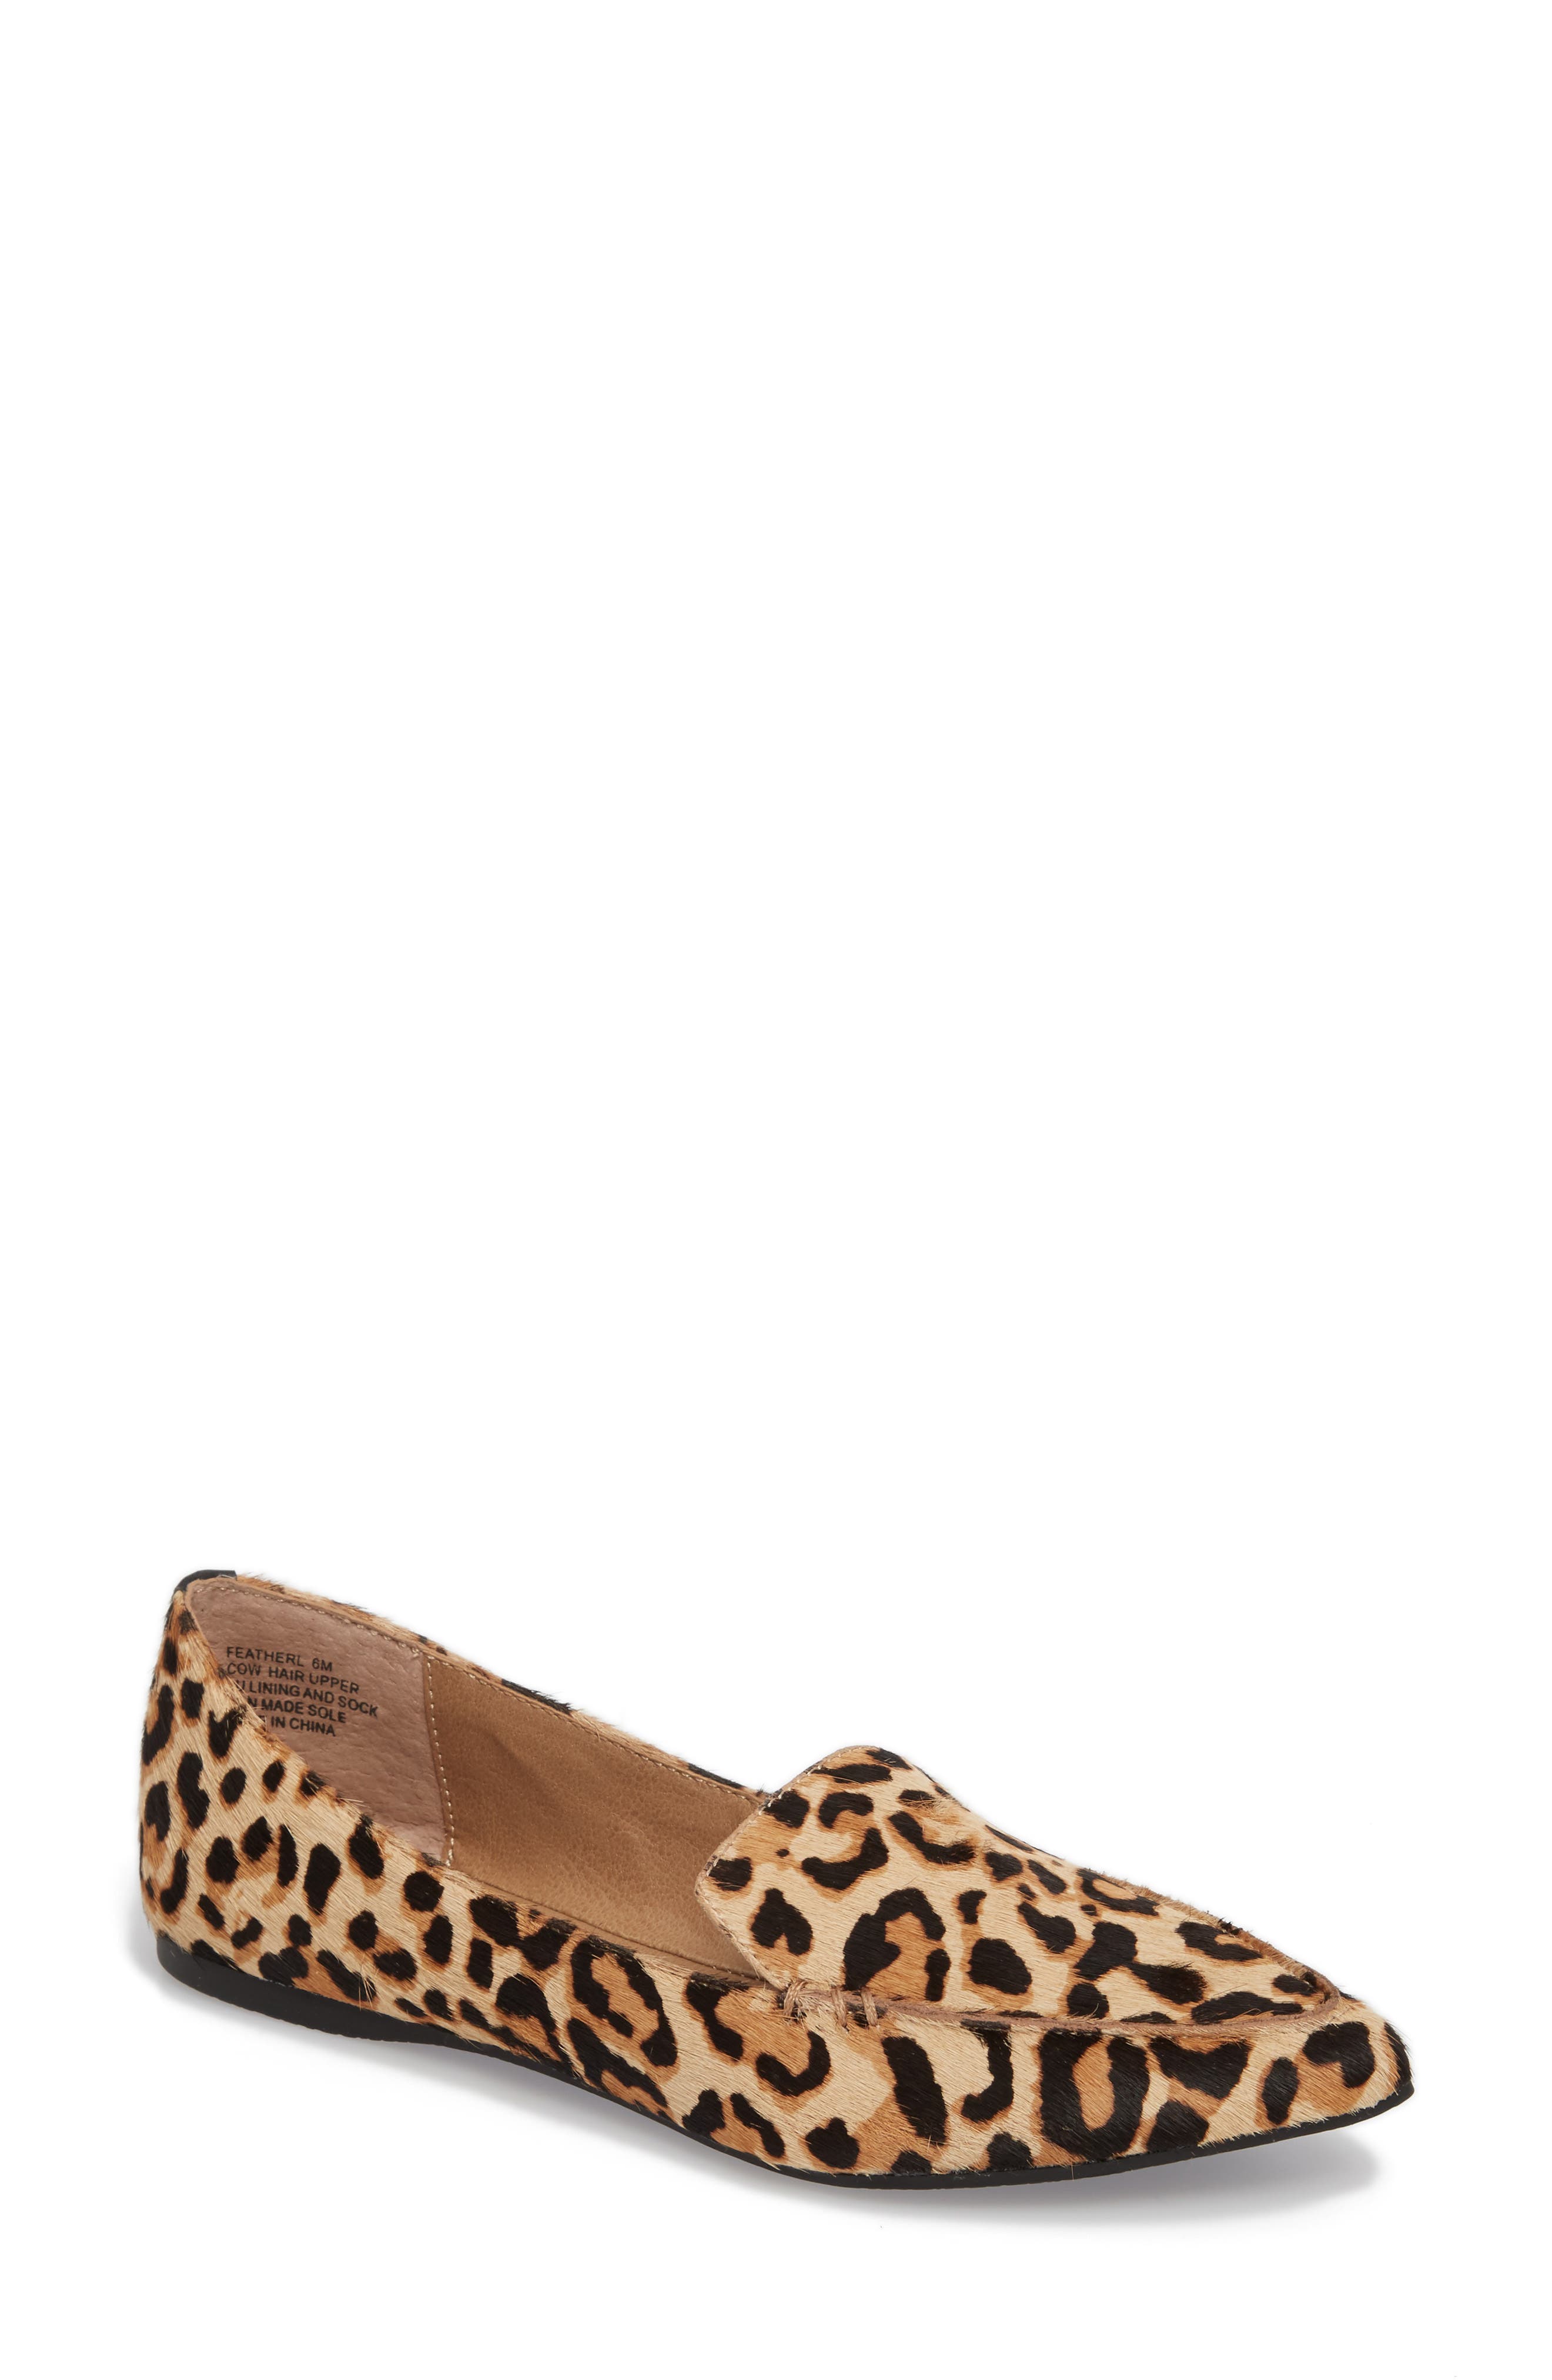 Women's Loafers Animal \u0026 Leopard Print 